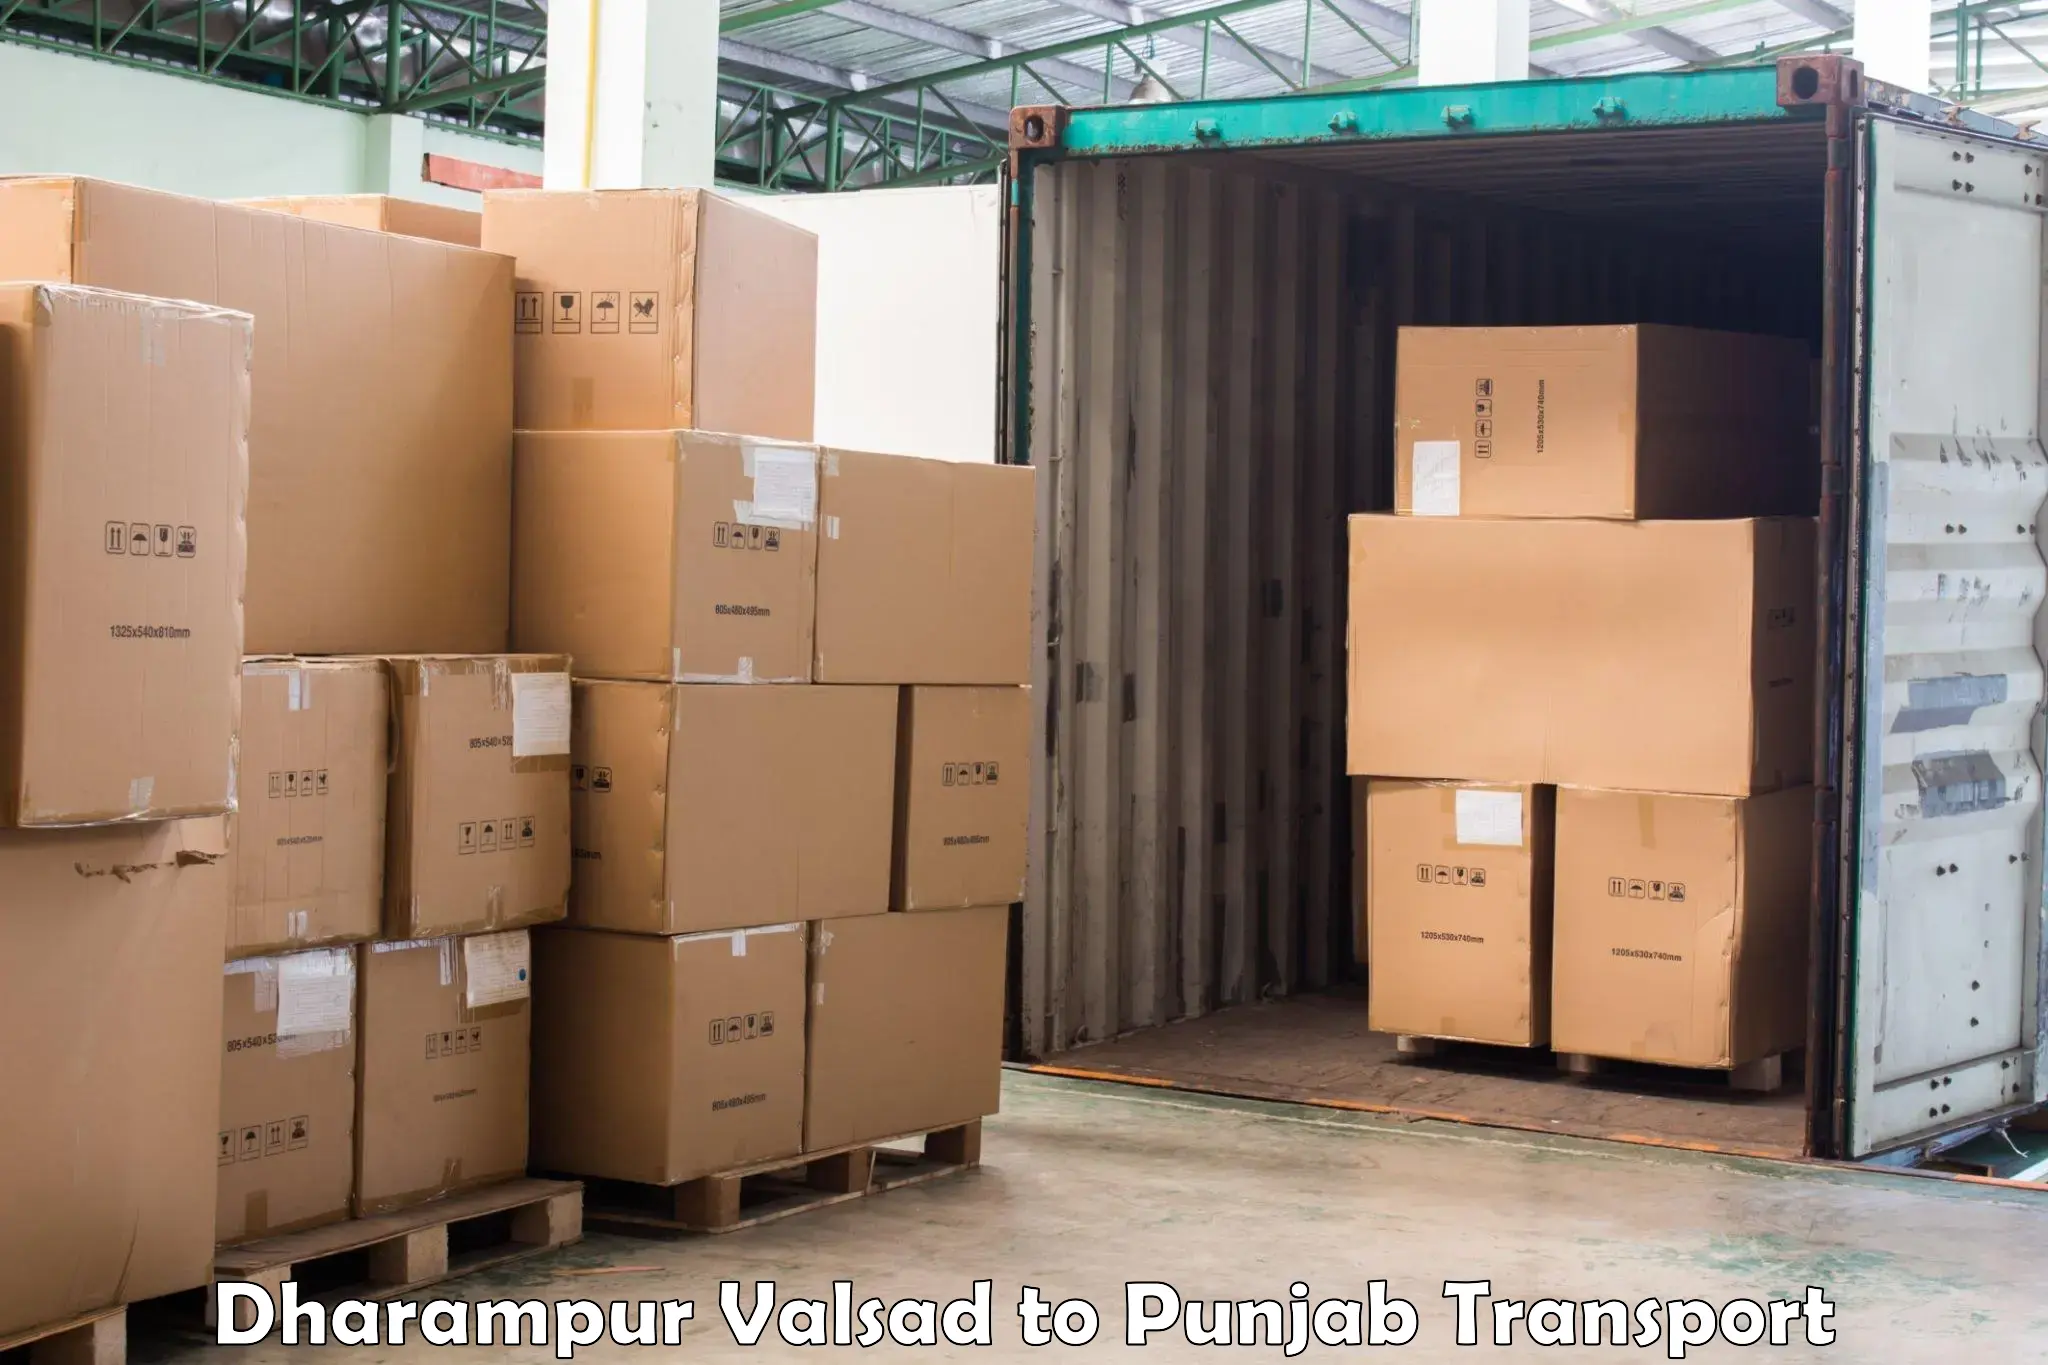 Land transport services Dharampur Valsad to Rupnagar